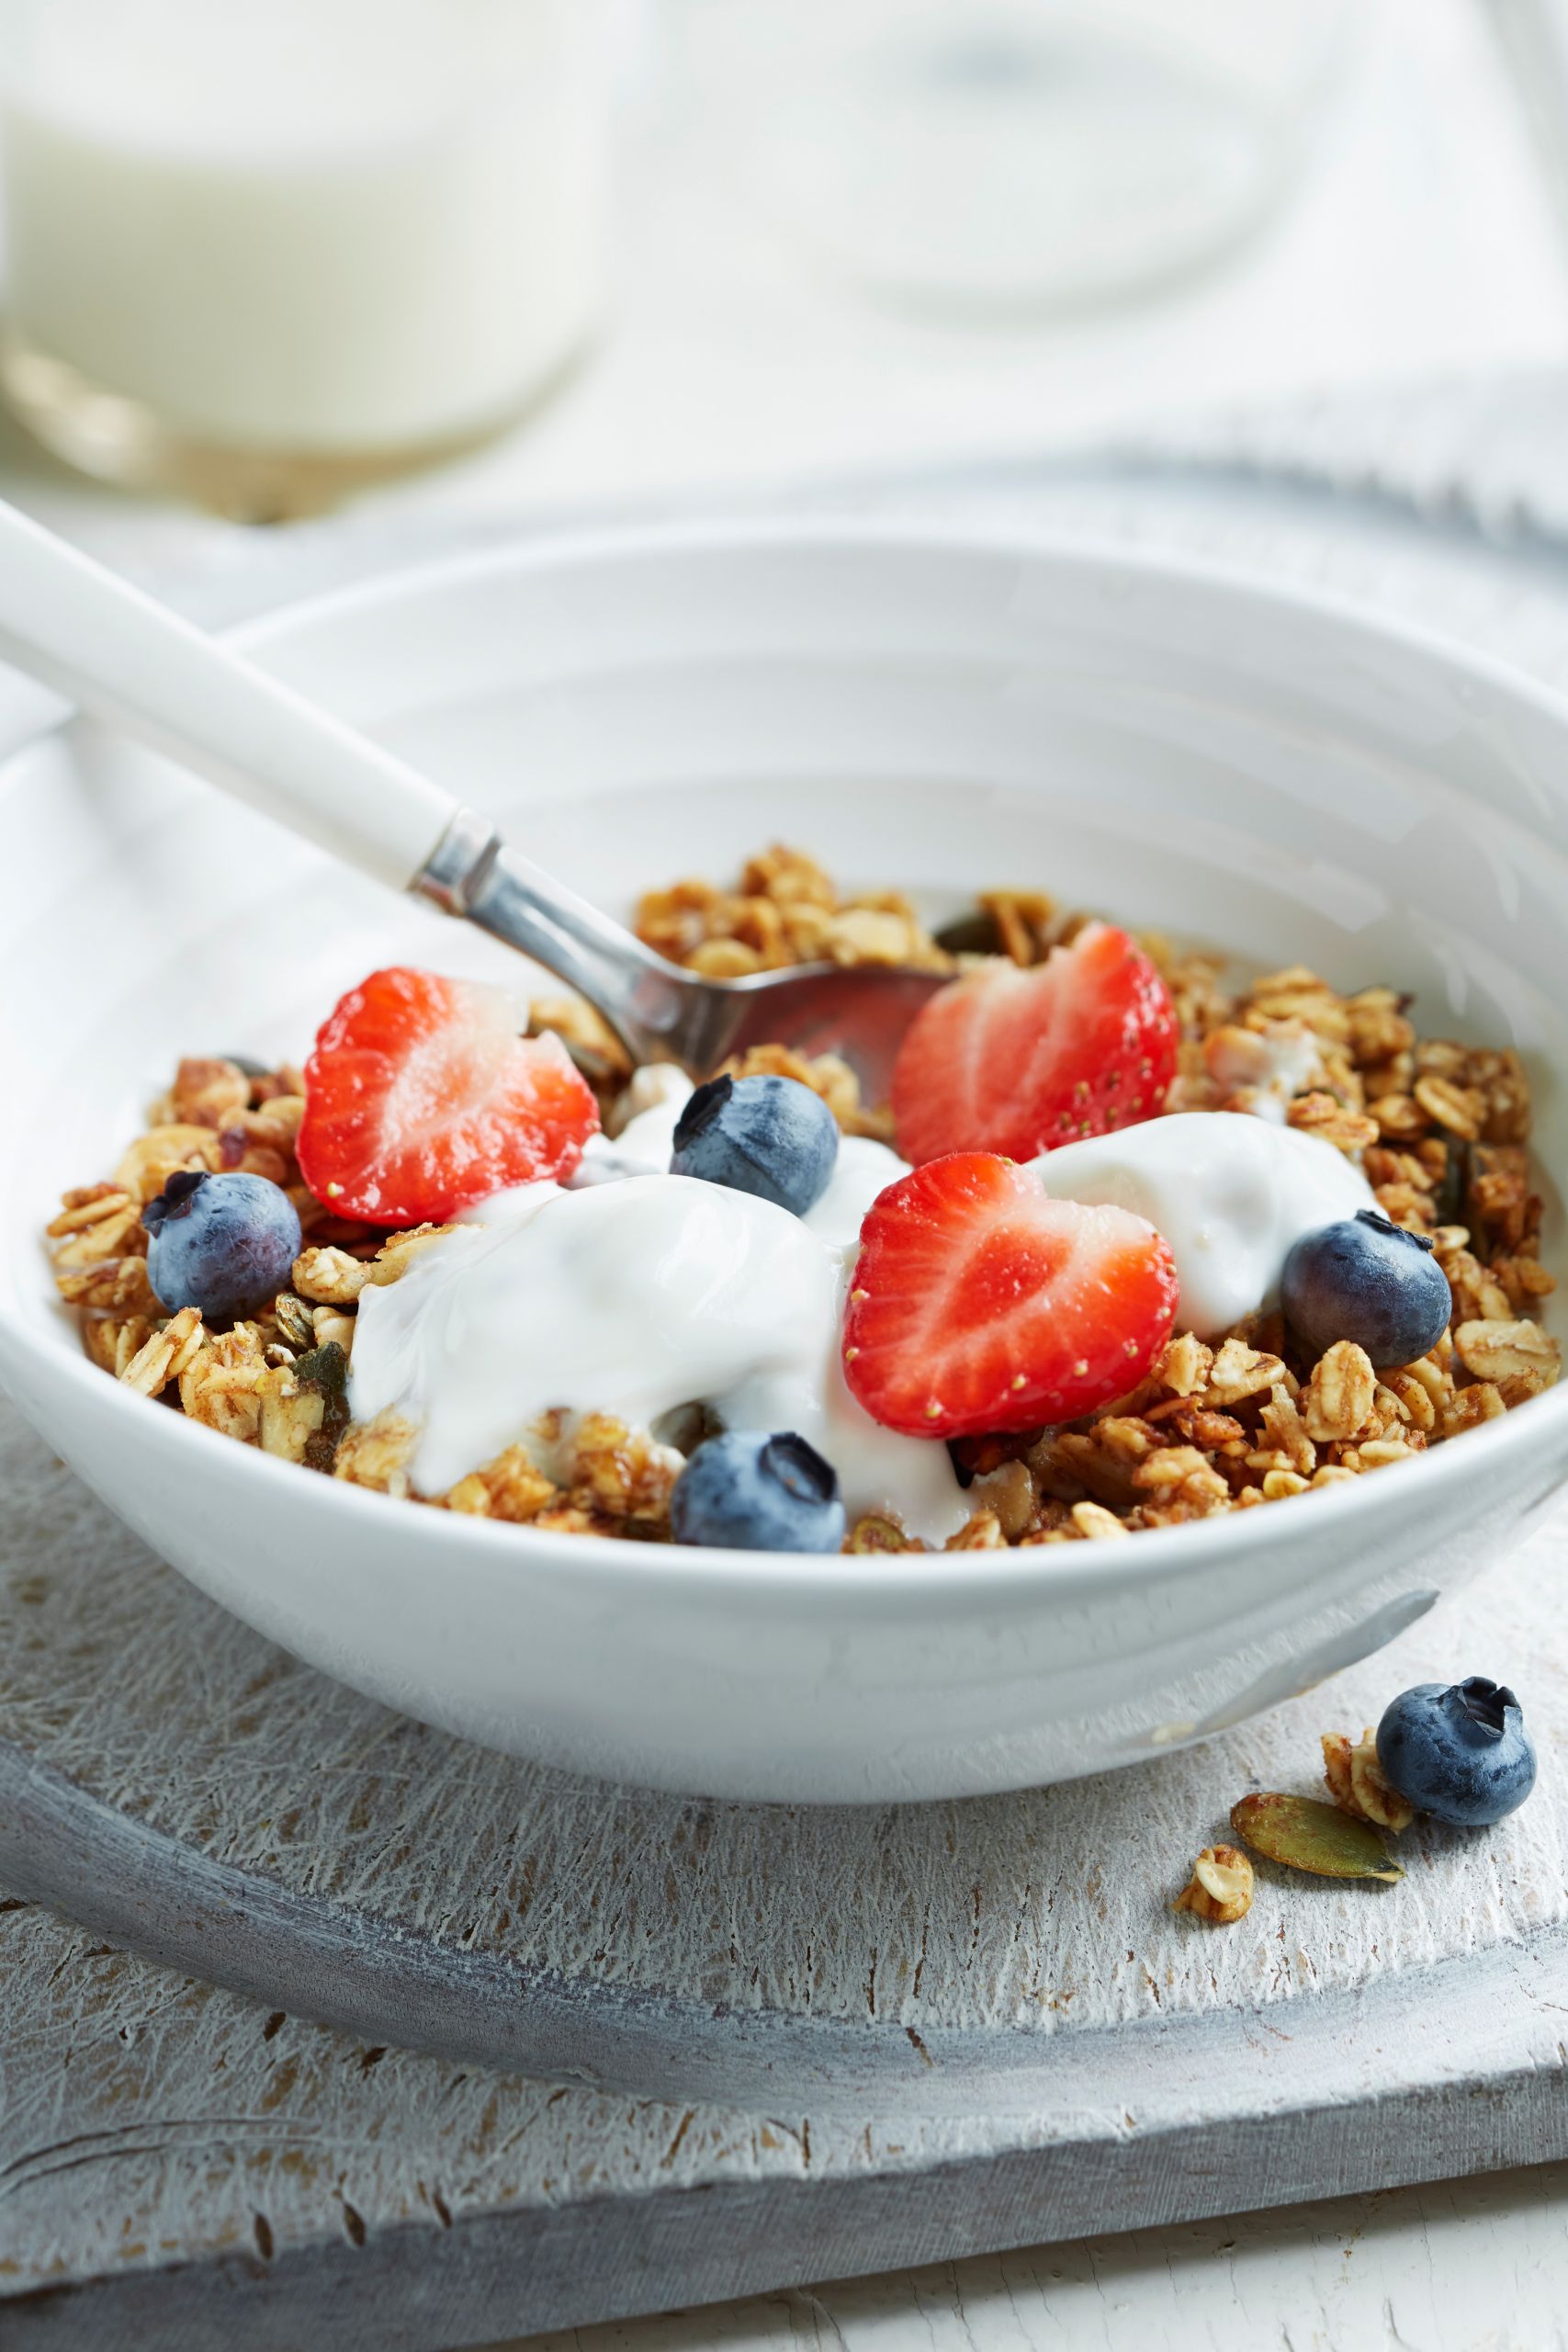 Healthiest Breakfast Cereals Best Of 30 Best Healthy Breakfast Cereals whole Grain Cereal List